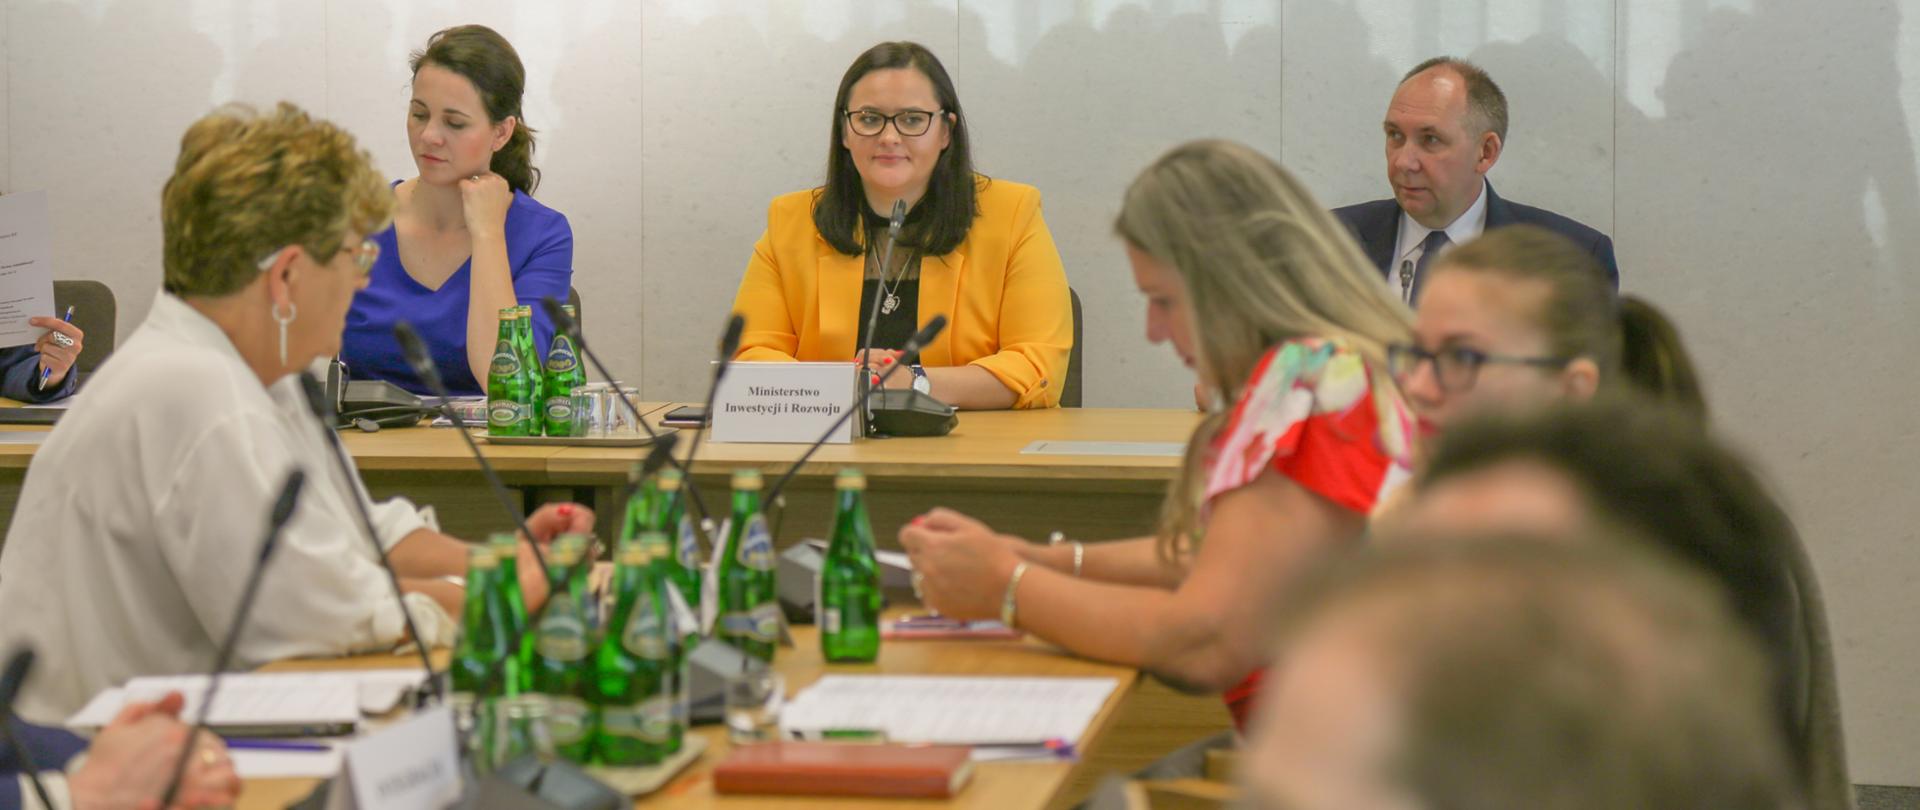 Grupa ludzi siedzi na sali. Przy stole prezydialnym siedzą trzy osoby. Po środku wiceminister Małgorzata Jarosińska-Jedynak.